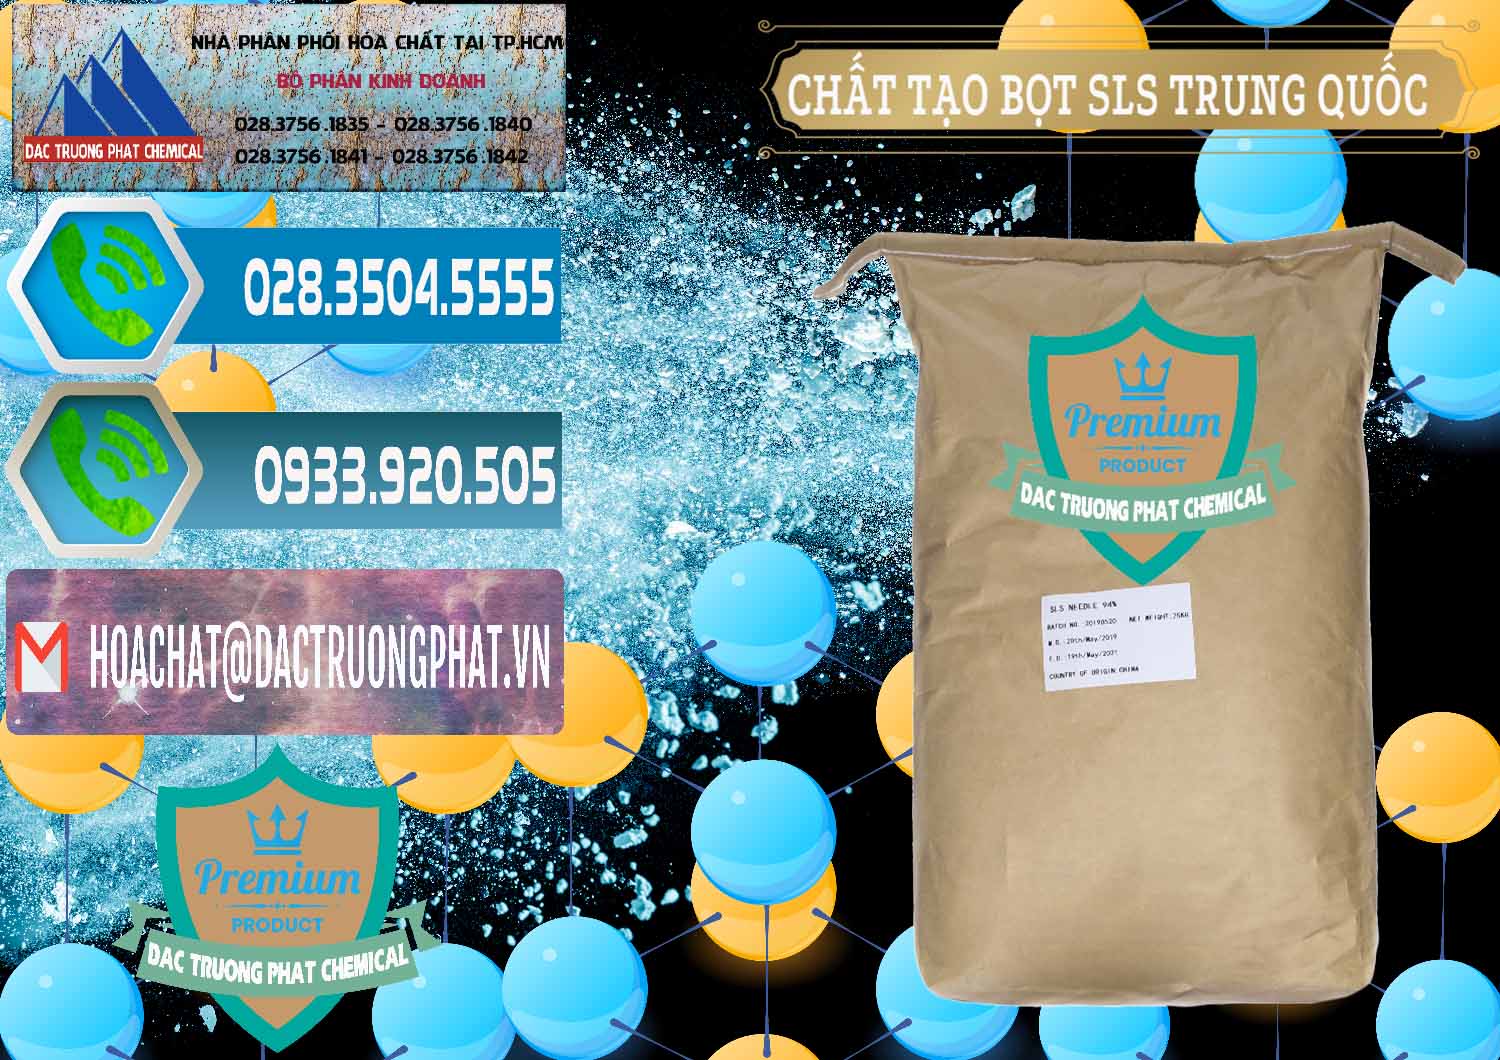 Cty chuyên kinh doanh và bán Chất Tạo Bọt SLS - Sodium Lauryl Sulfate Trung Quốc China - 0048 - Công ty cung cấp - phân phối hóa chất tại TP.HCM - congtyhoachat.net